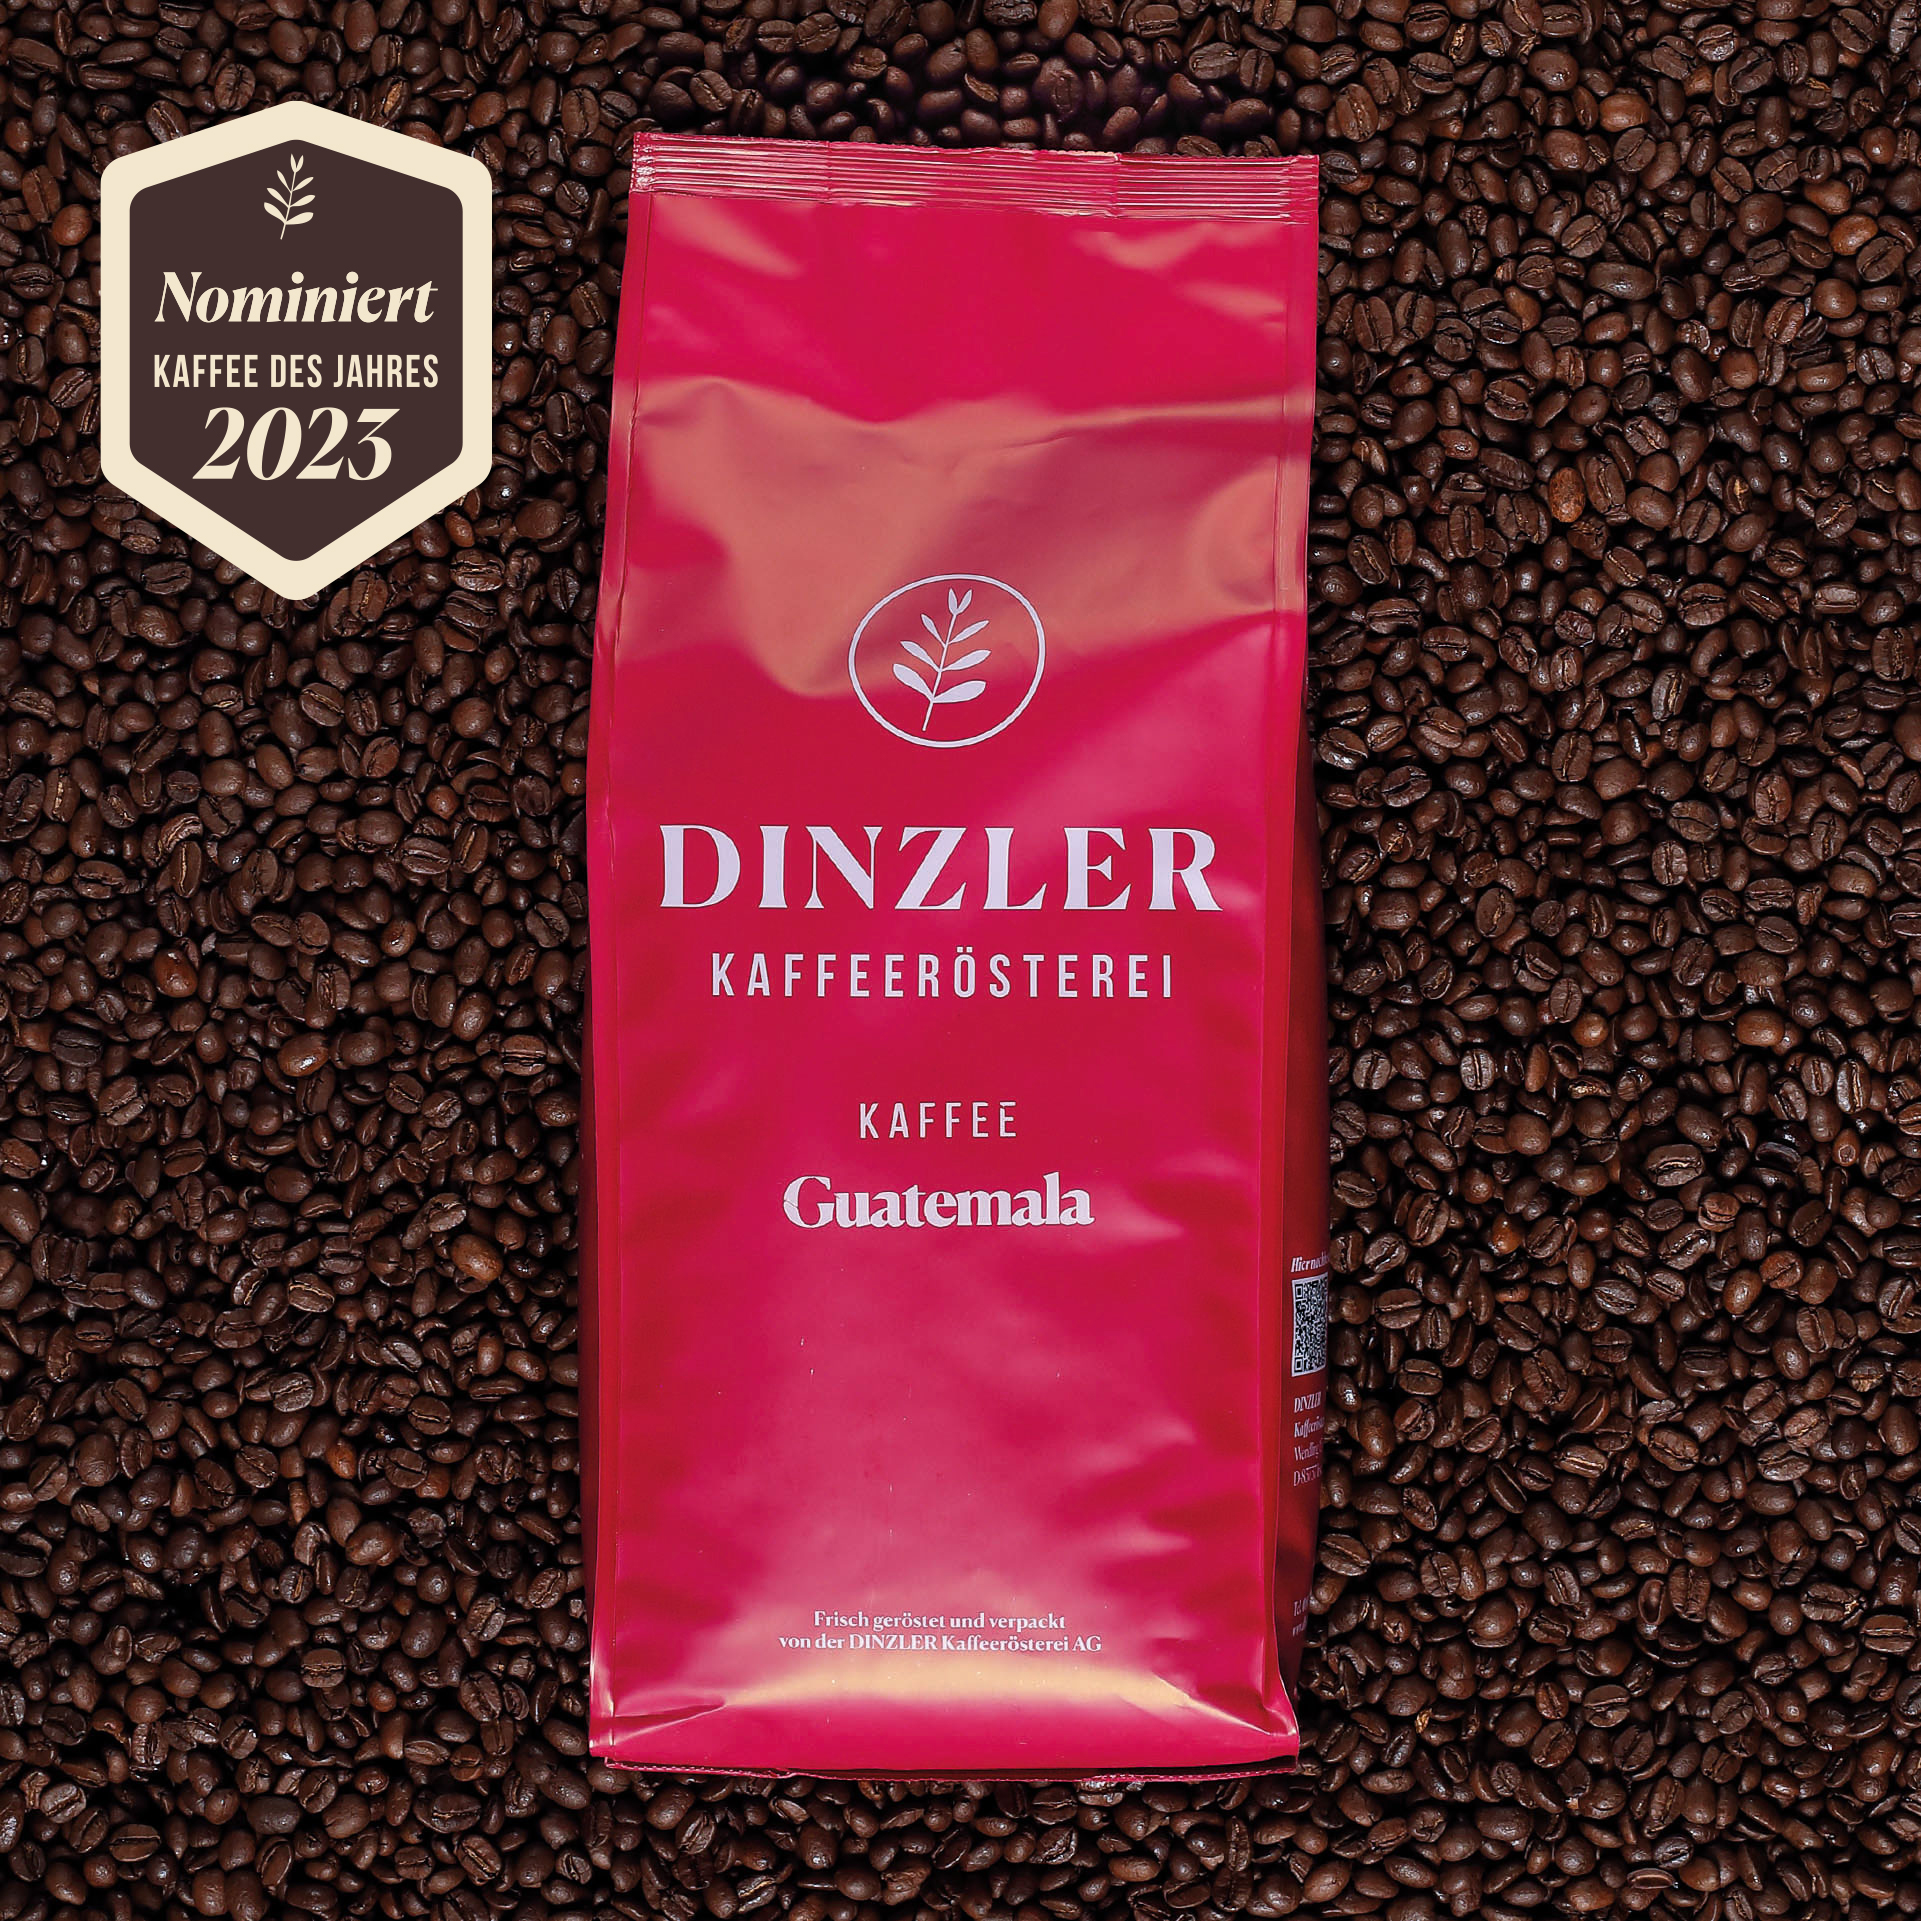 Produktbild DINZLER Kaffee Guatemala| DINZLER Kaffeerösterei